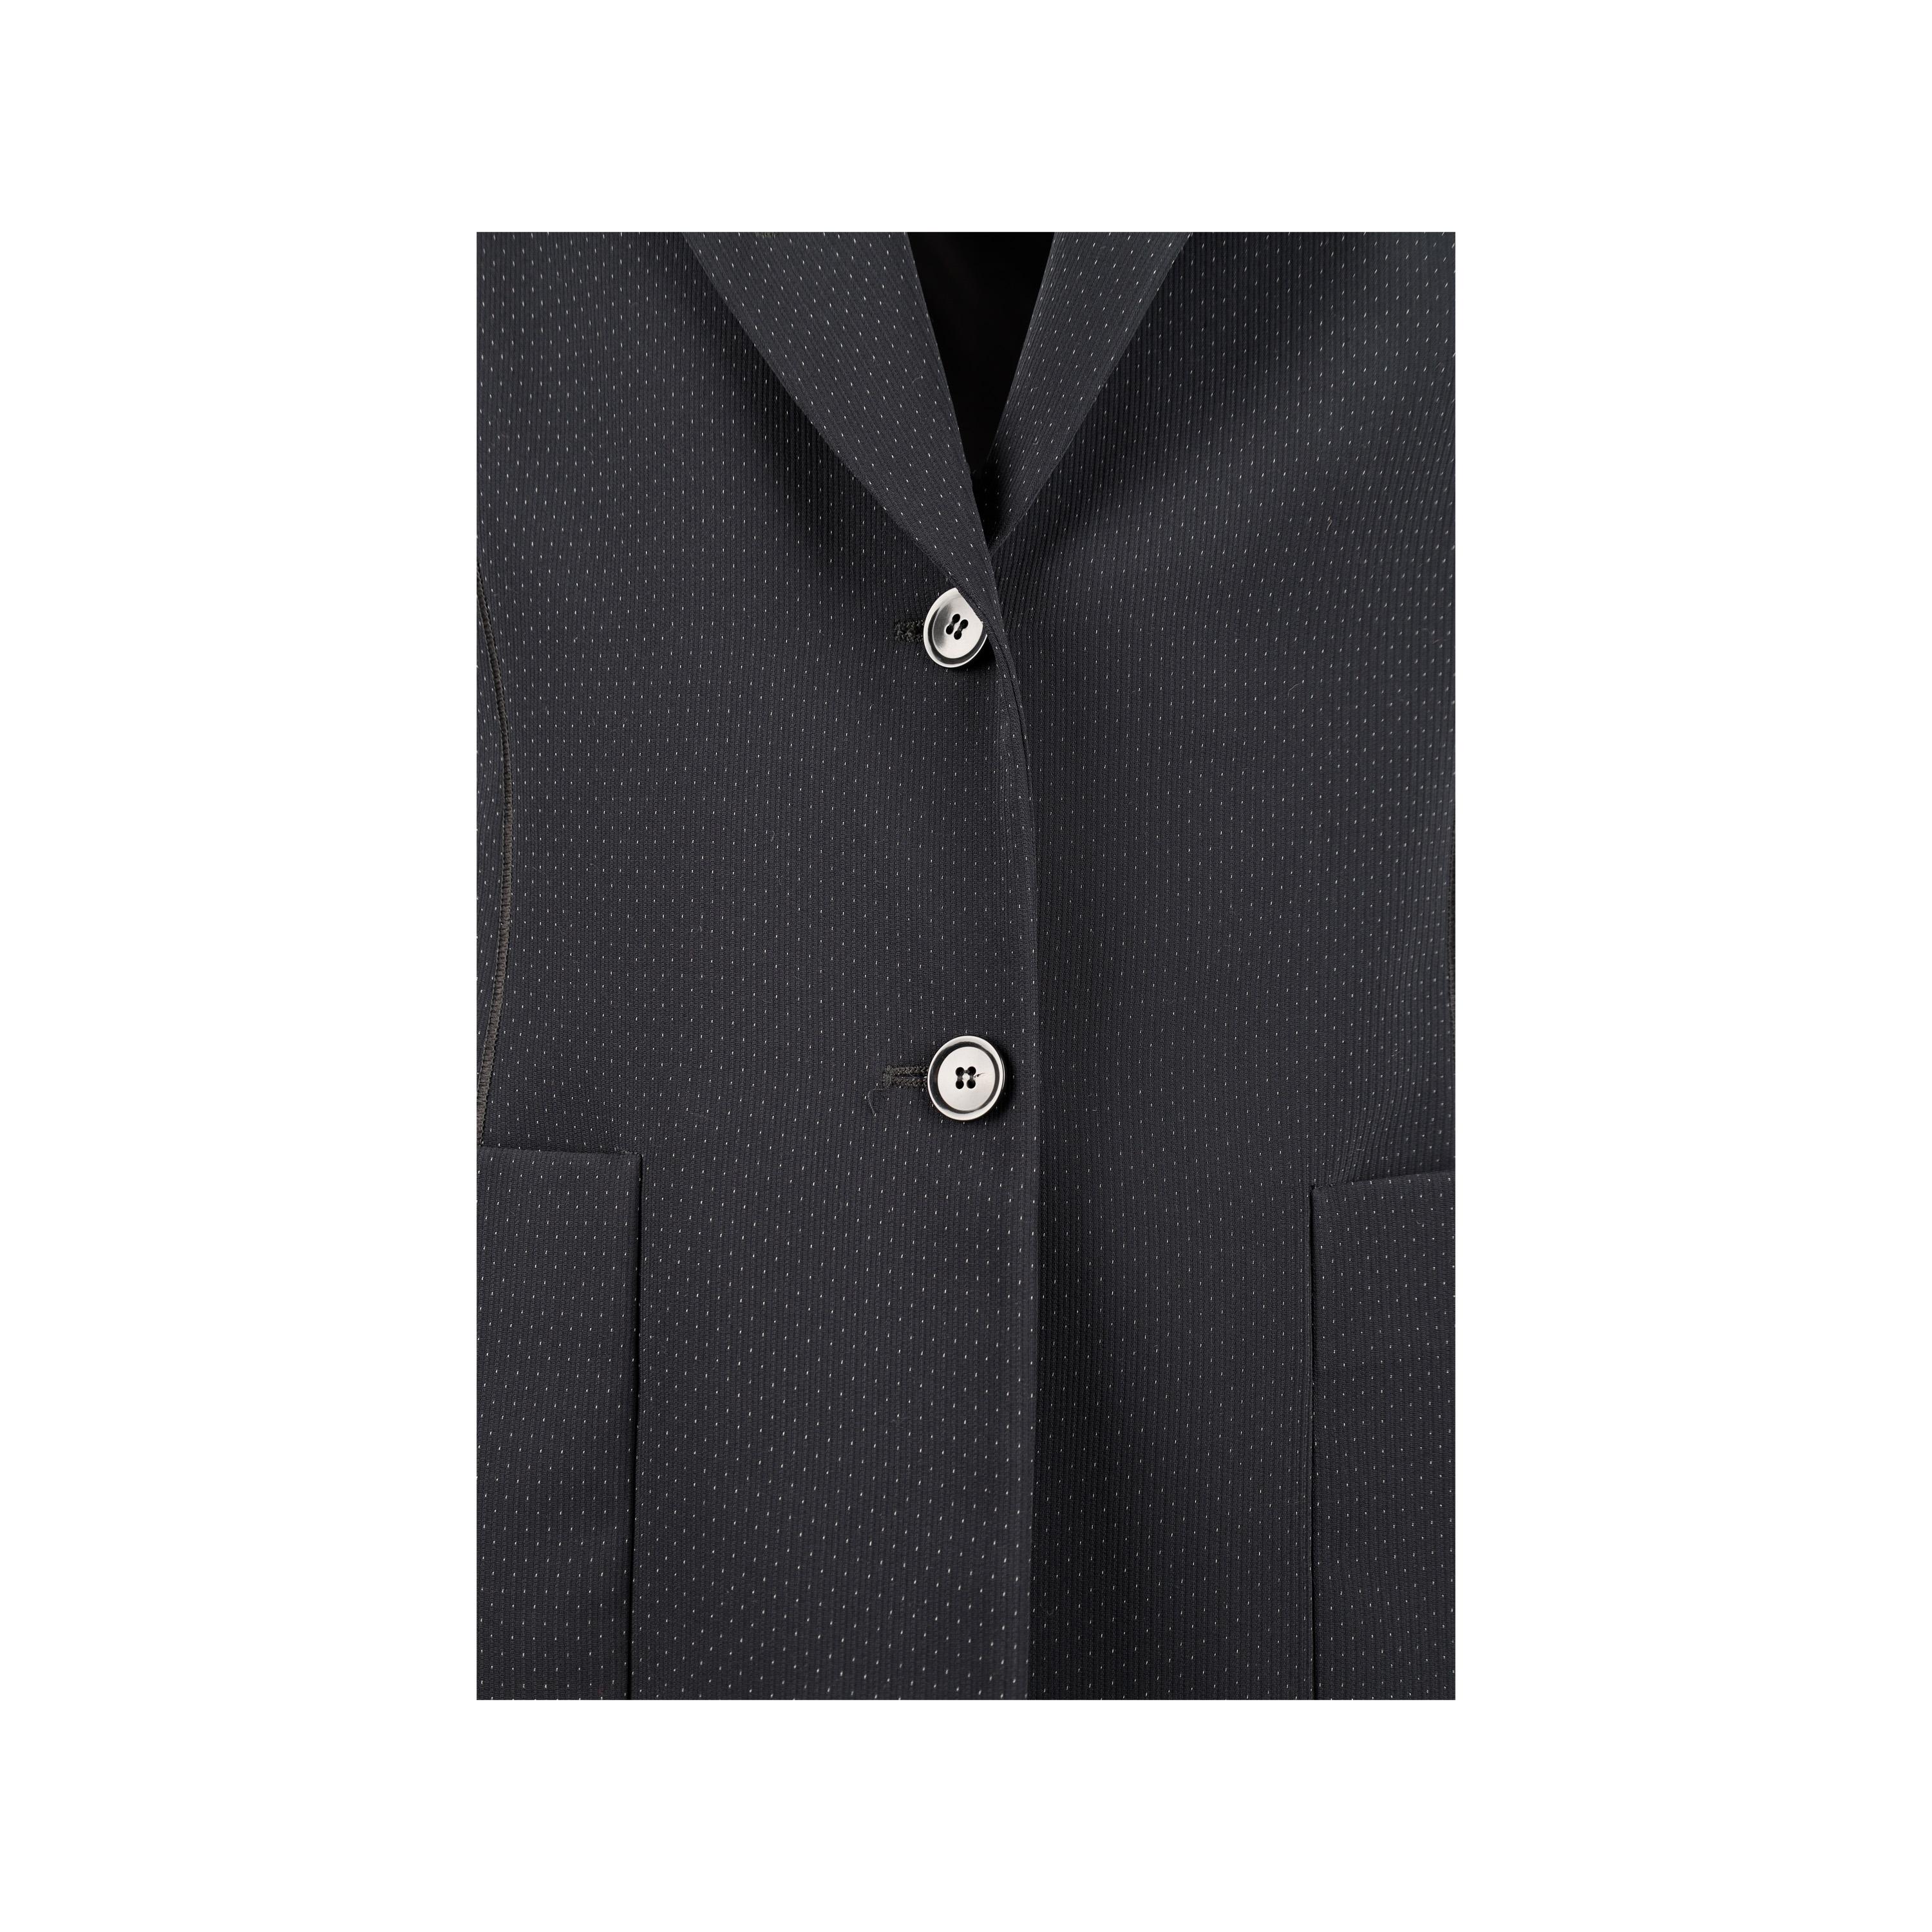 Giorgio Armani Borgo 21 Suit For Sale 3